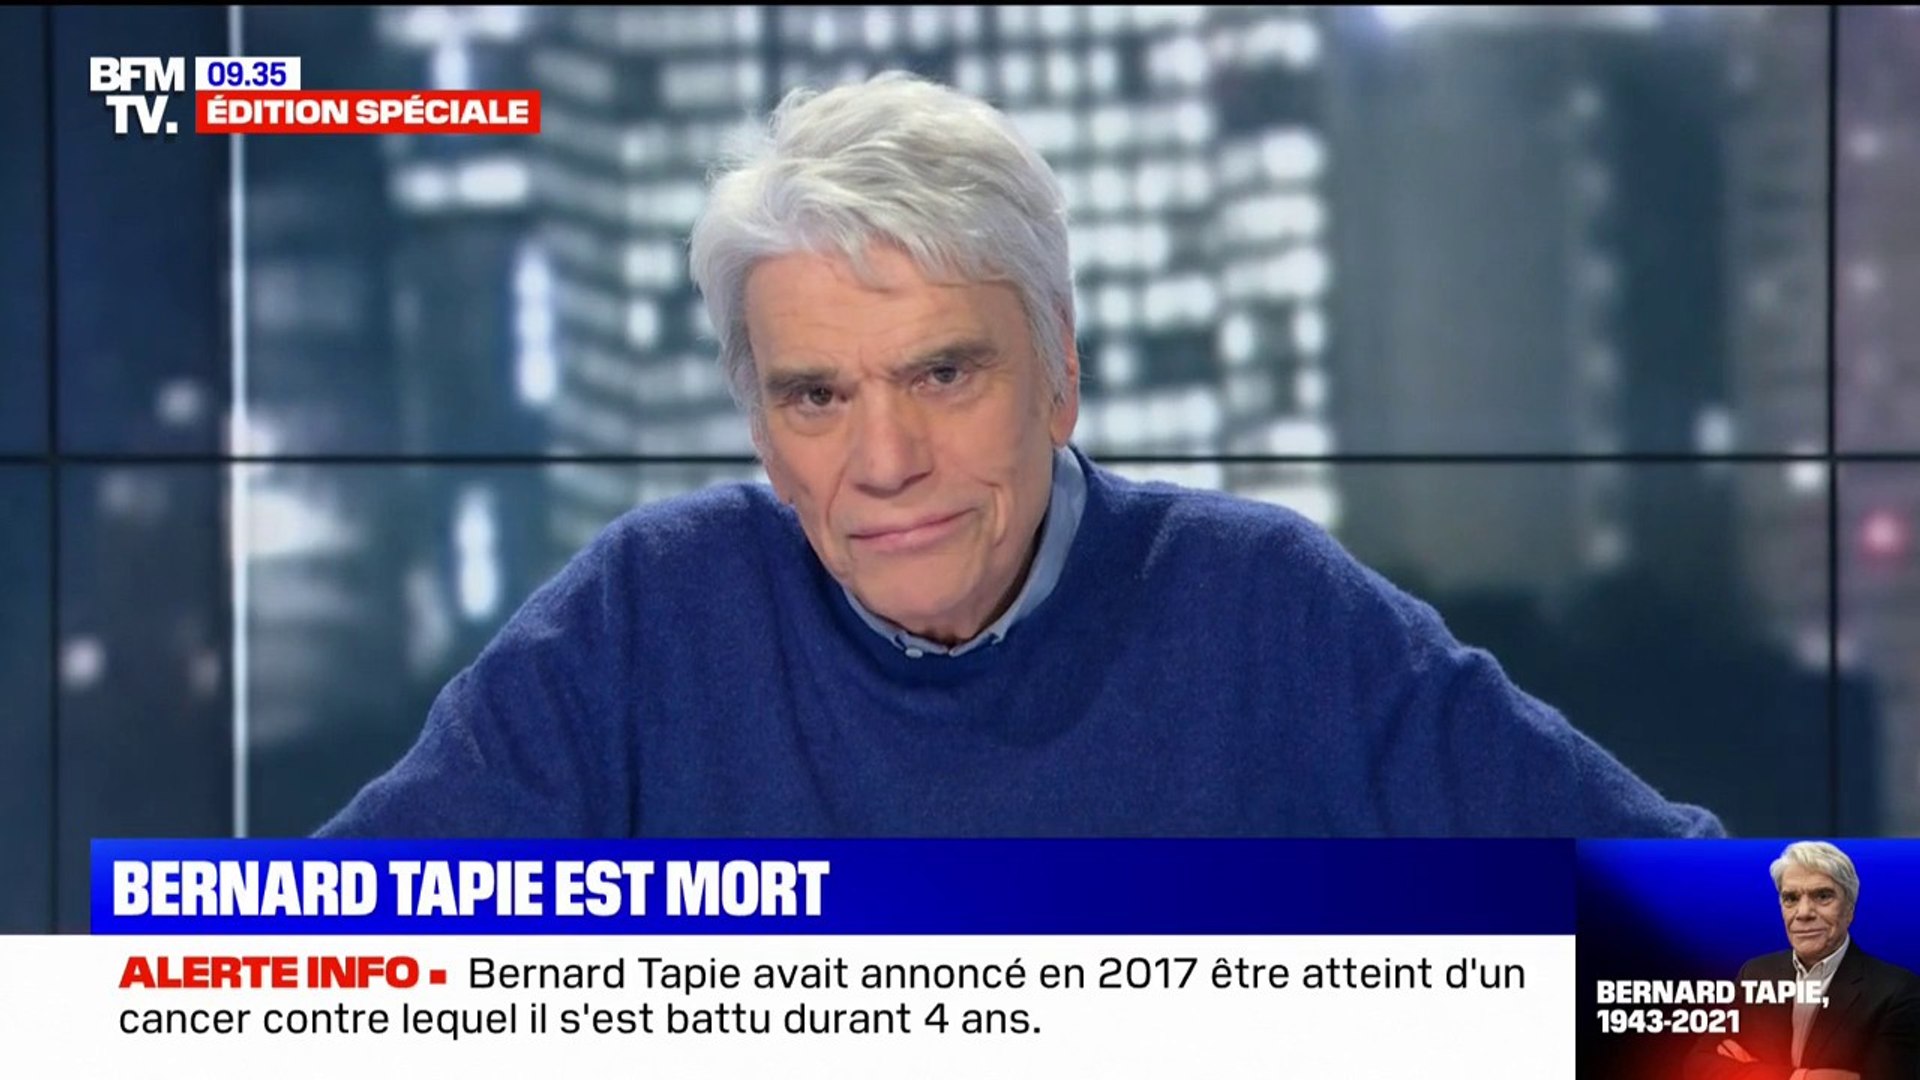 Ne cherchez pas à réussir dans la vie, mais battez vous pour réussir votre  vie": Bernard Tapie est mort ce matin - Vidéo Dailymotion